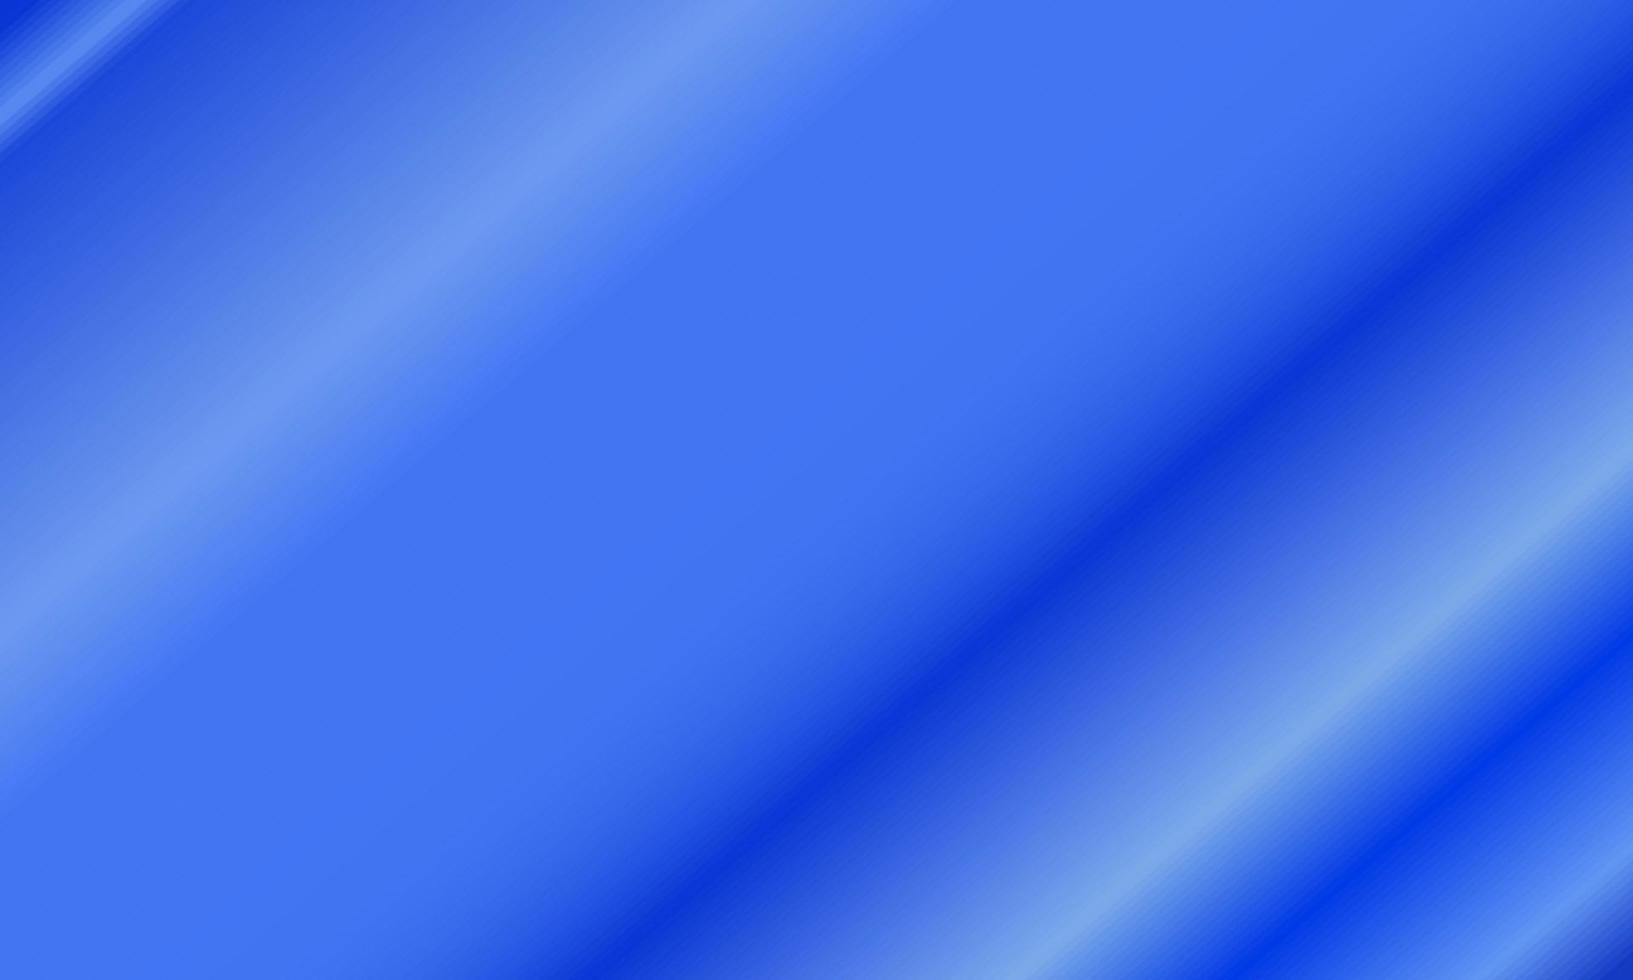 gradiente diagonal azul e branco. estilo abstrato, simples, moderno e colorido. ótimo para plano de fundo, papel de parede, cartão, capa, pôster, banner ou panfleto vetor